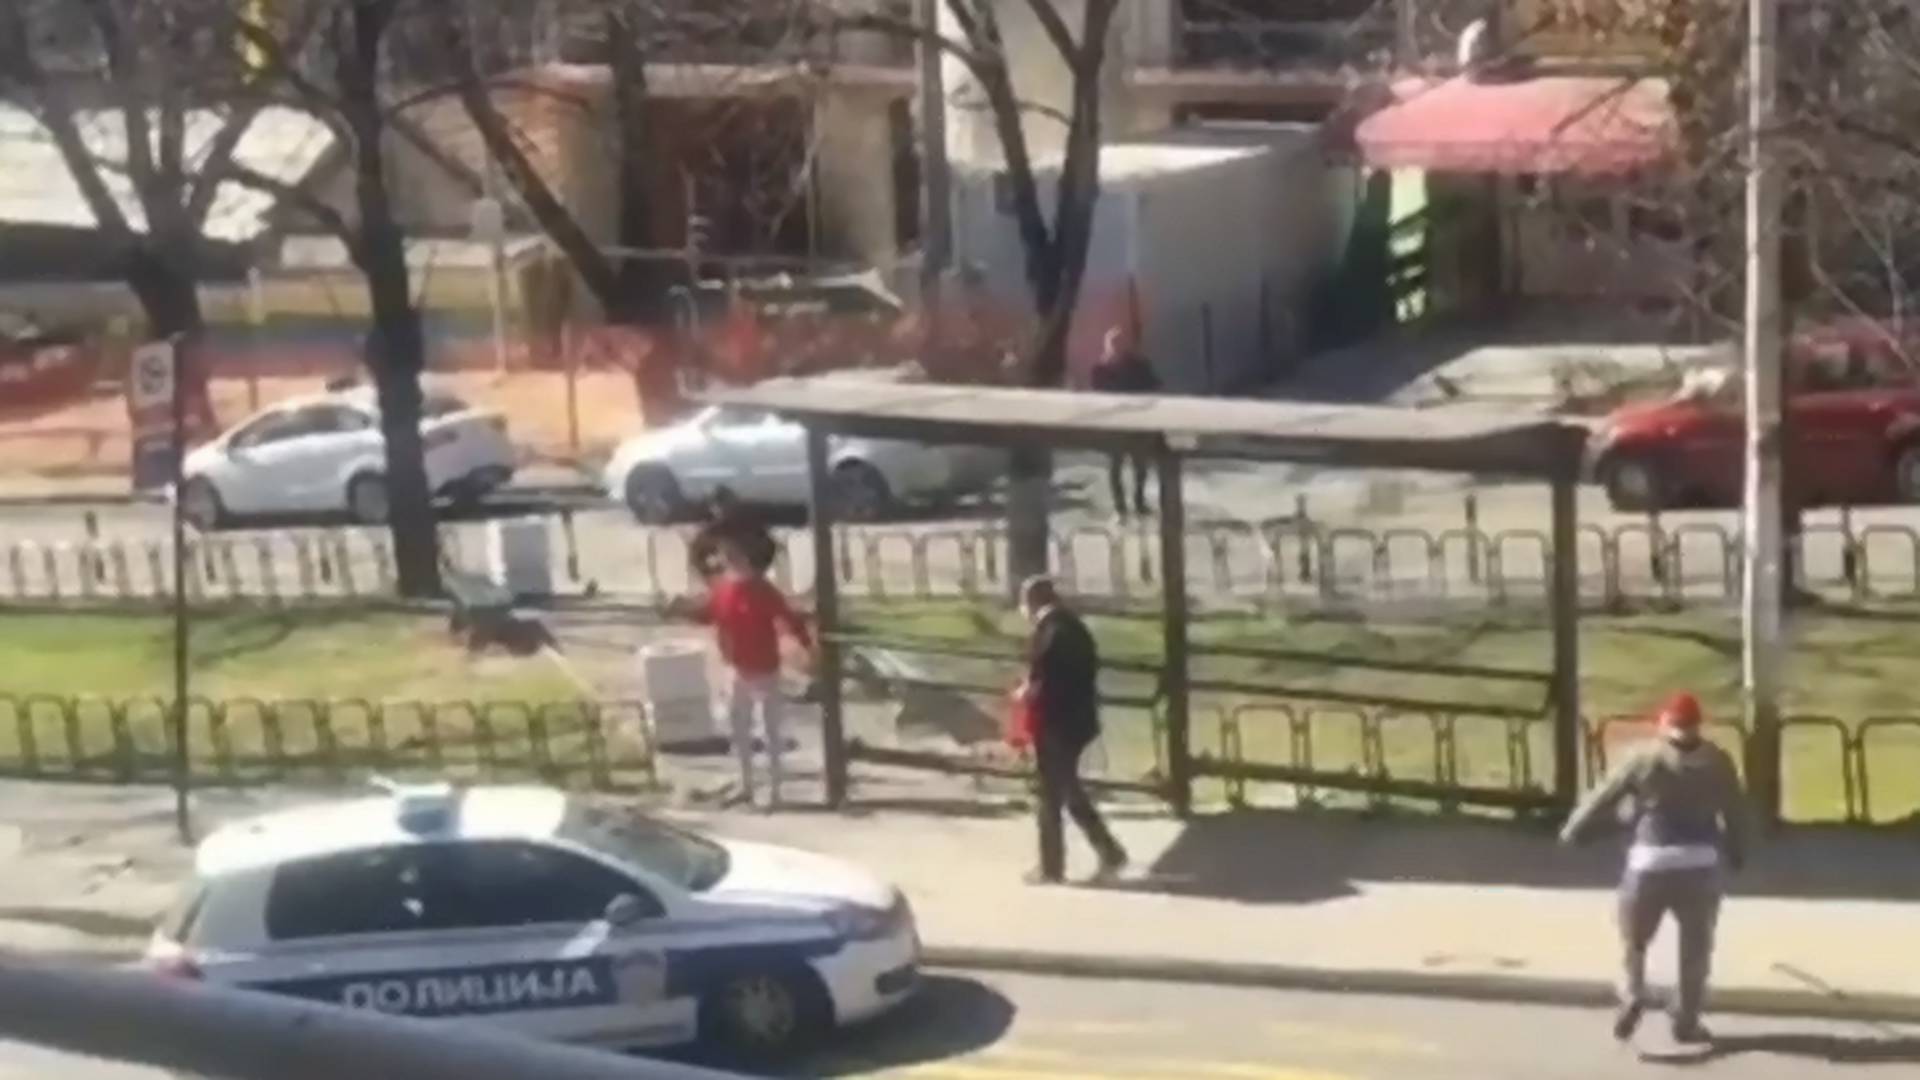 Svi dele snimak Beograđana koji su savladali lopova dok je pokušavao da opljačka prodavnicu